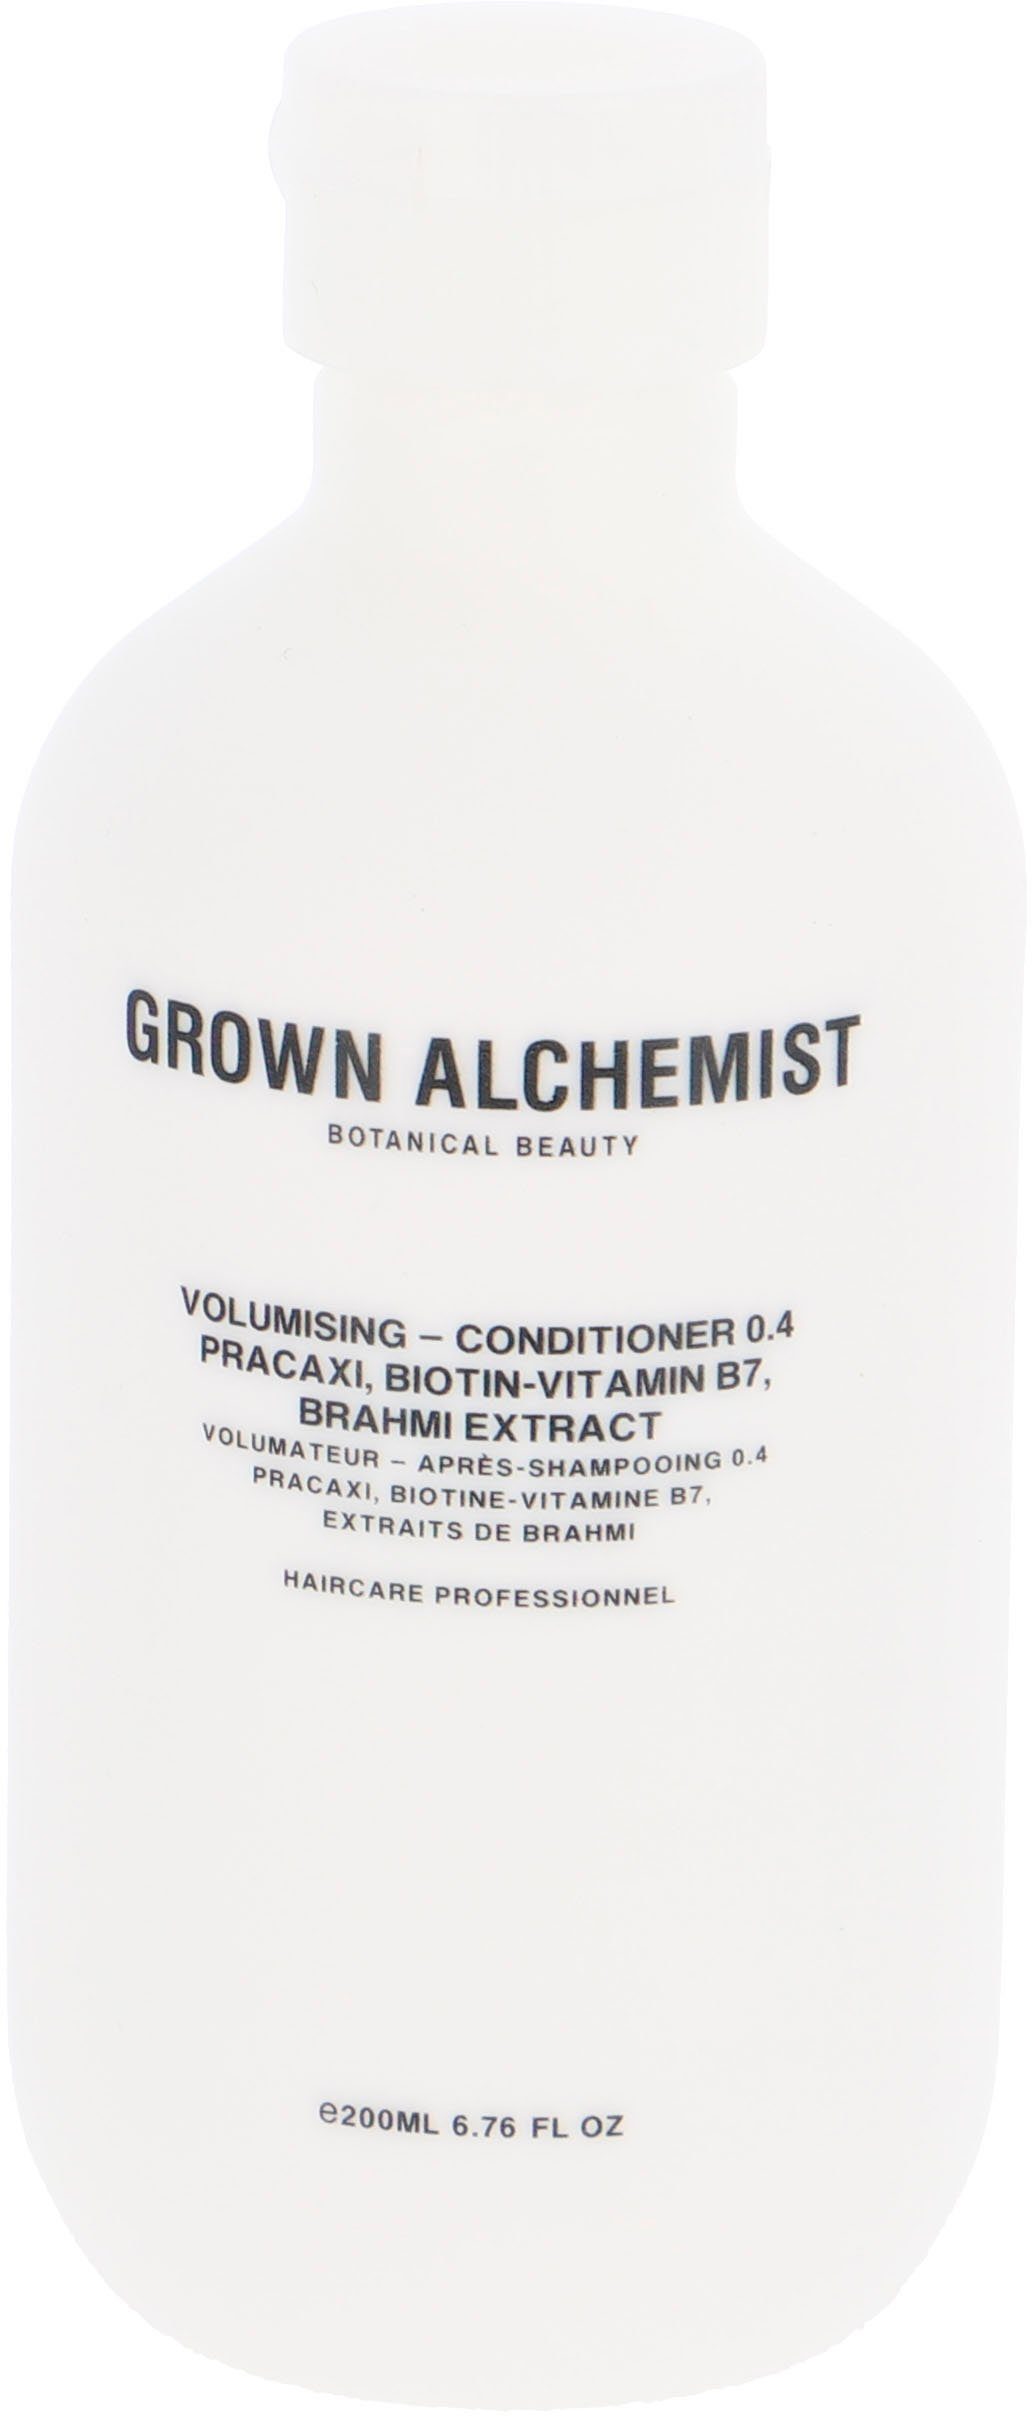 Volumising Biotin-Vitamin 0.4, Haarspülung GROWN Conditioner Brahmi ALCHEMIST Extract Pracaxi, B7, -